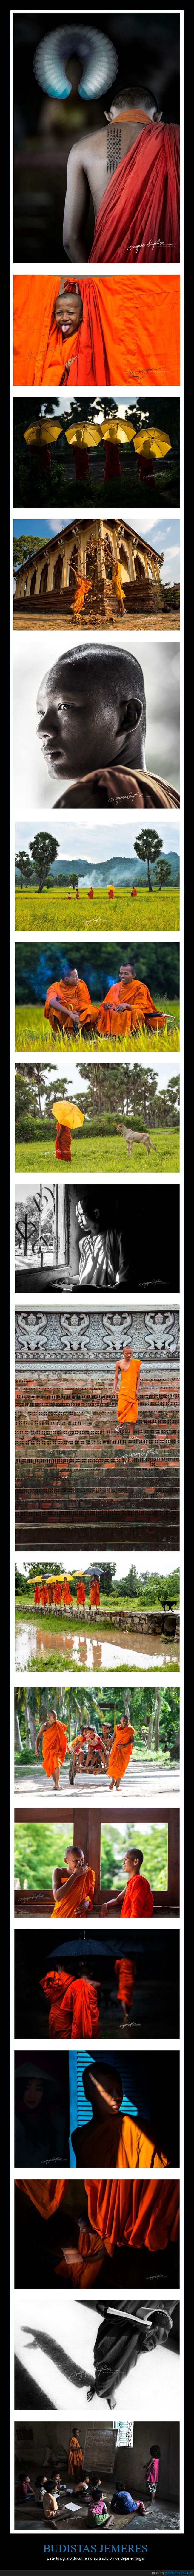 budistas jemeres,fotografía